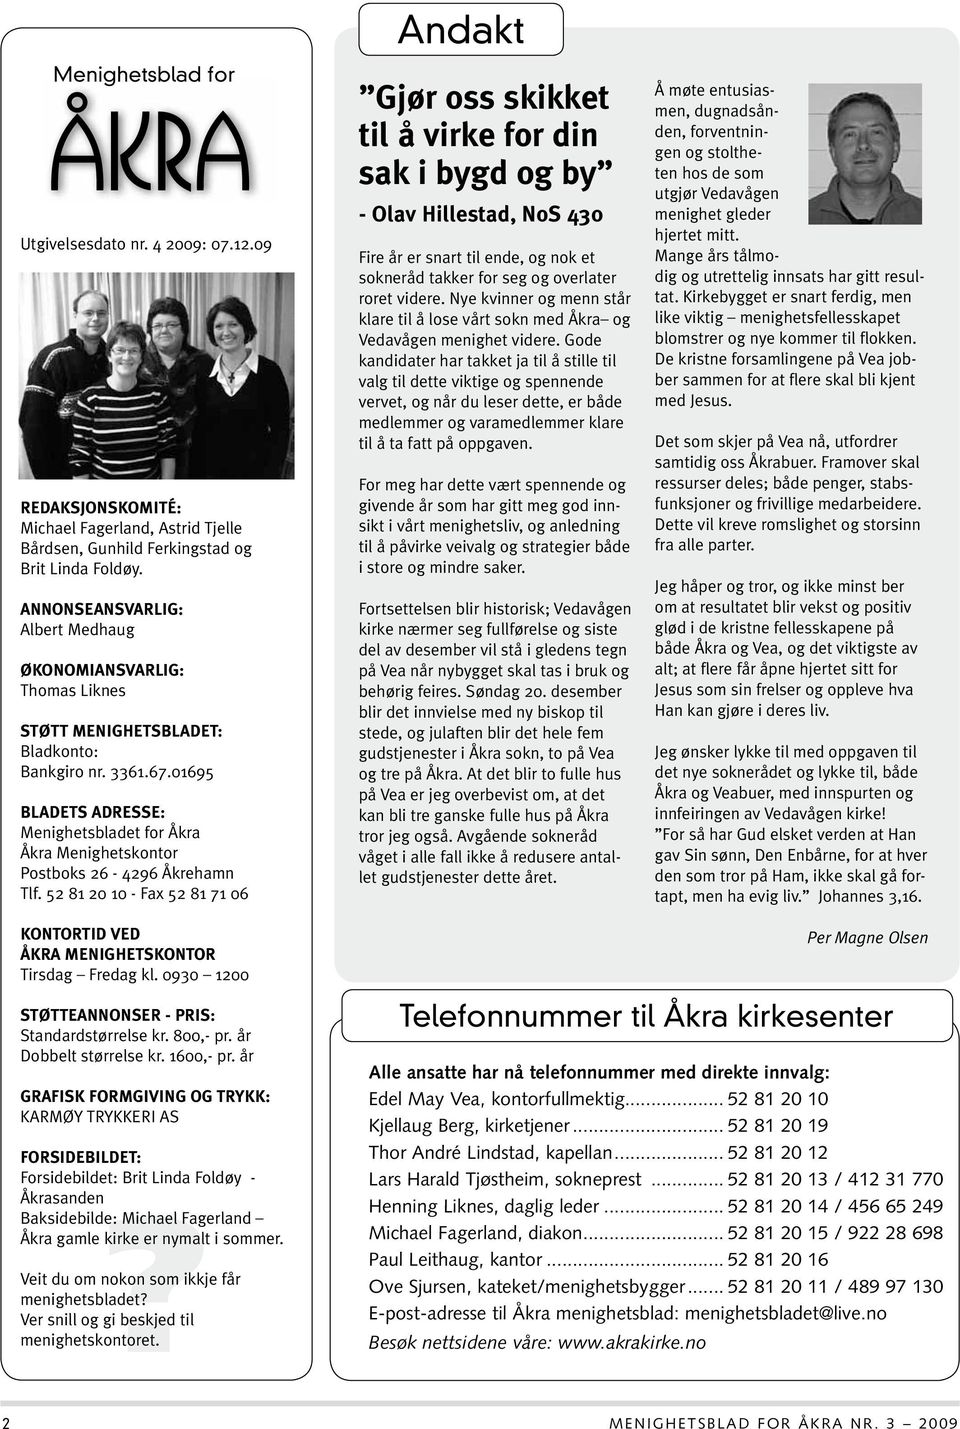 01695 Bladets adresse: Menighetsbladet for Åkra Åkra Menighetskontor Postboks 26-4296 Åkrehamn Tlf.